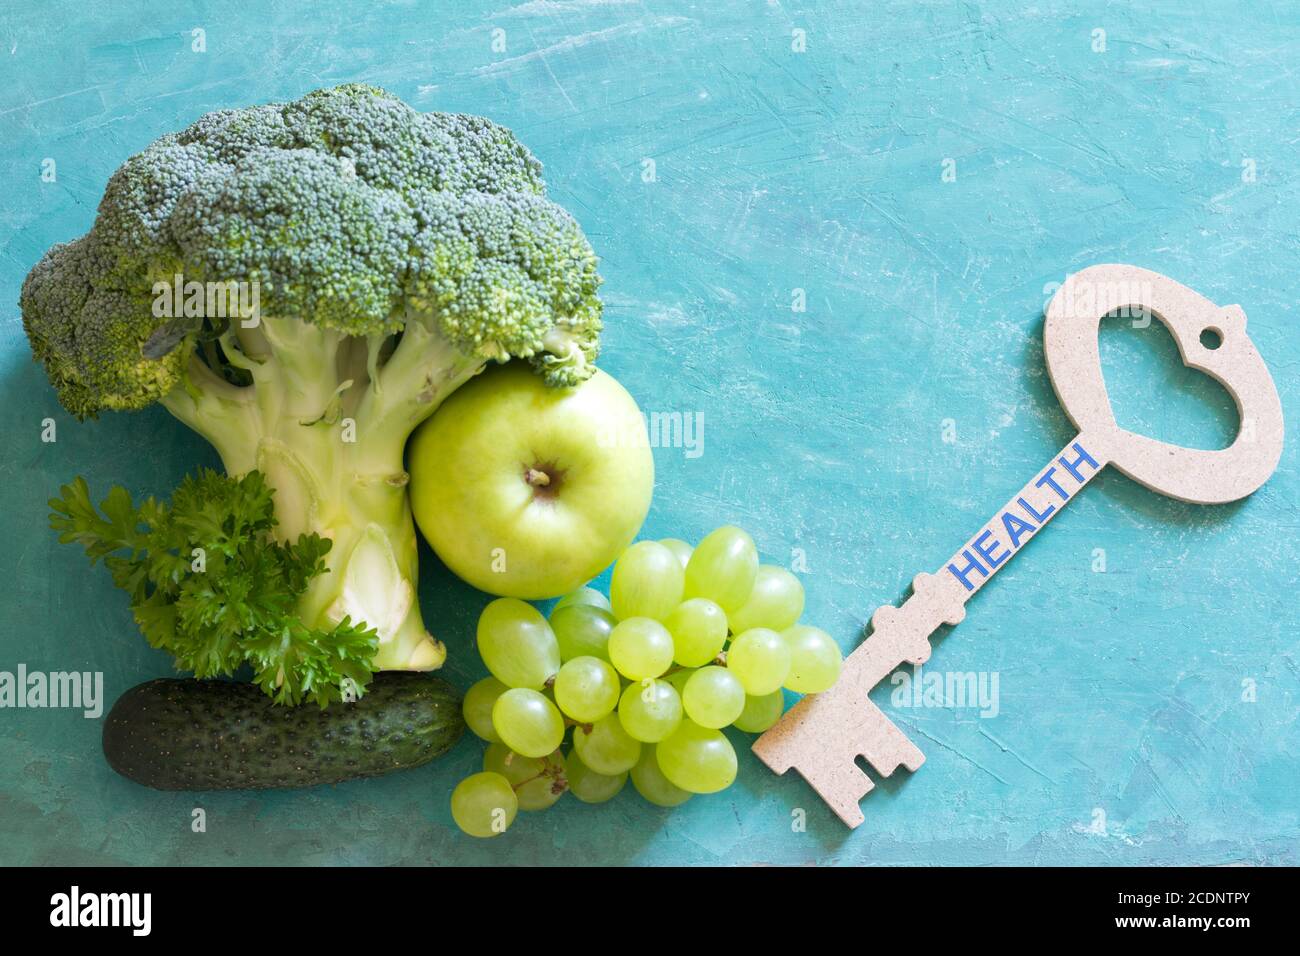 Chiave per la salute. Verdure e frutta con concetto chiave di stile di vita sano Foto Stock